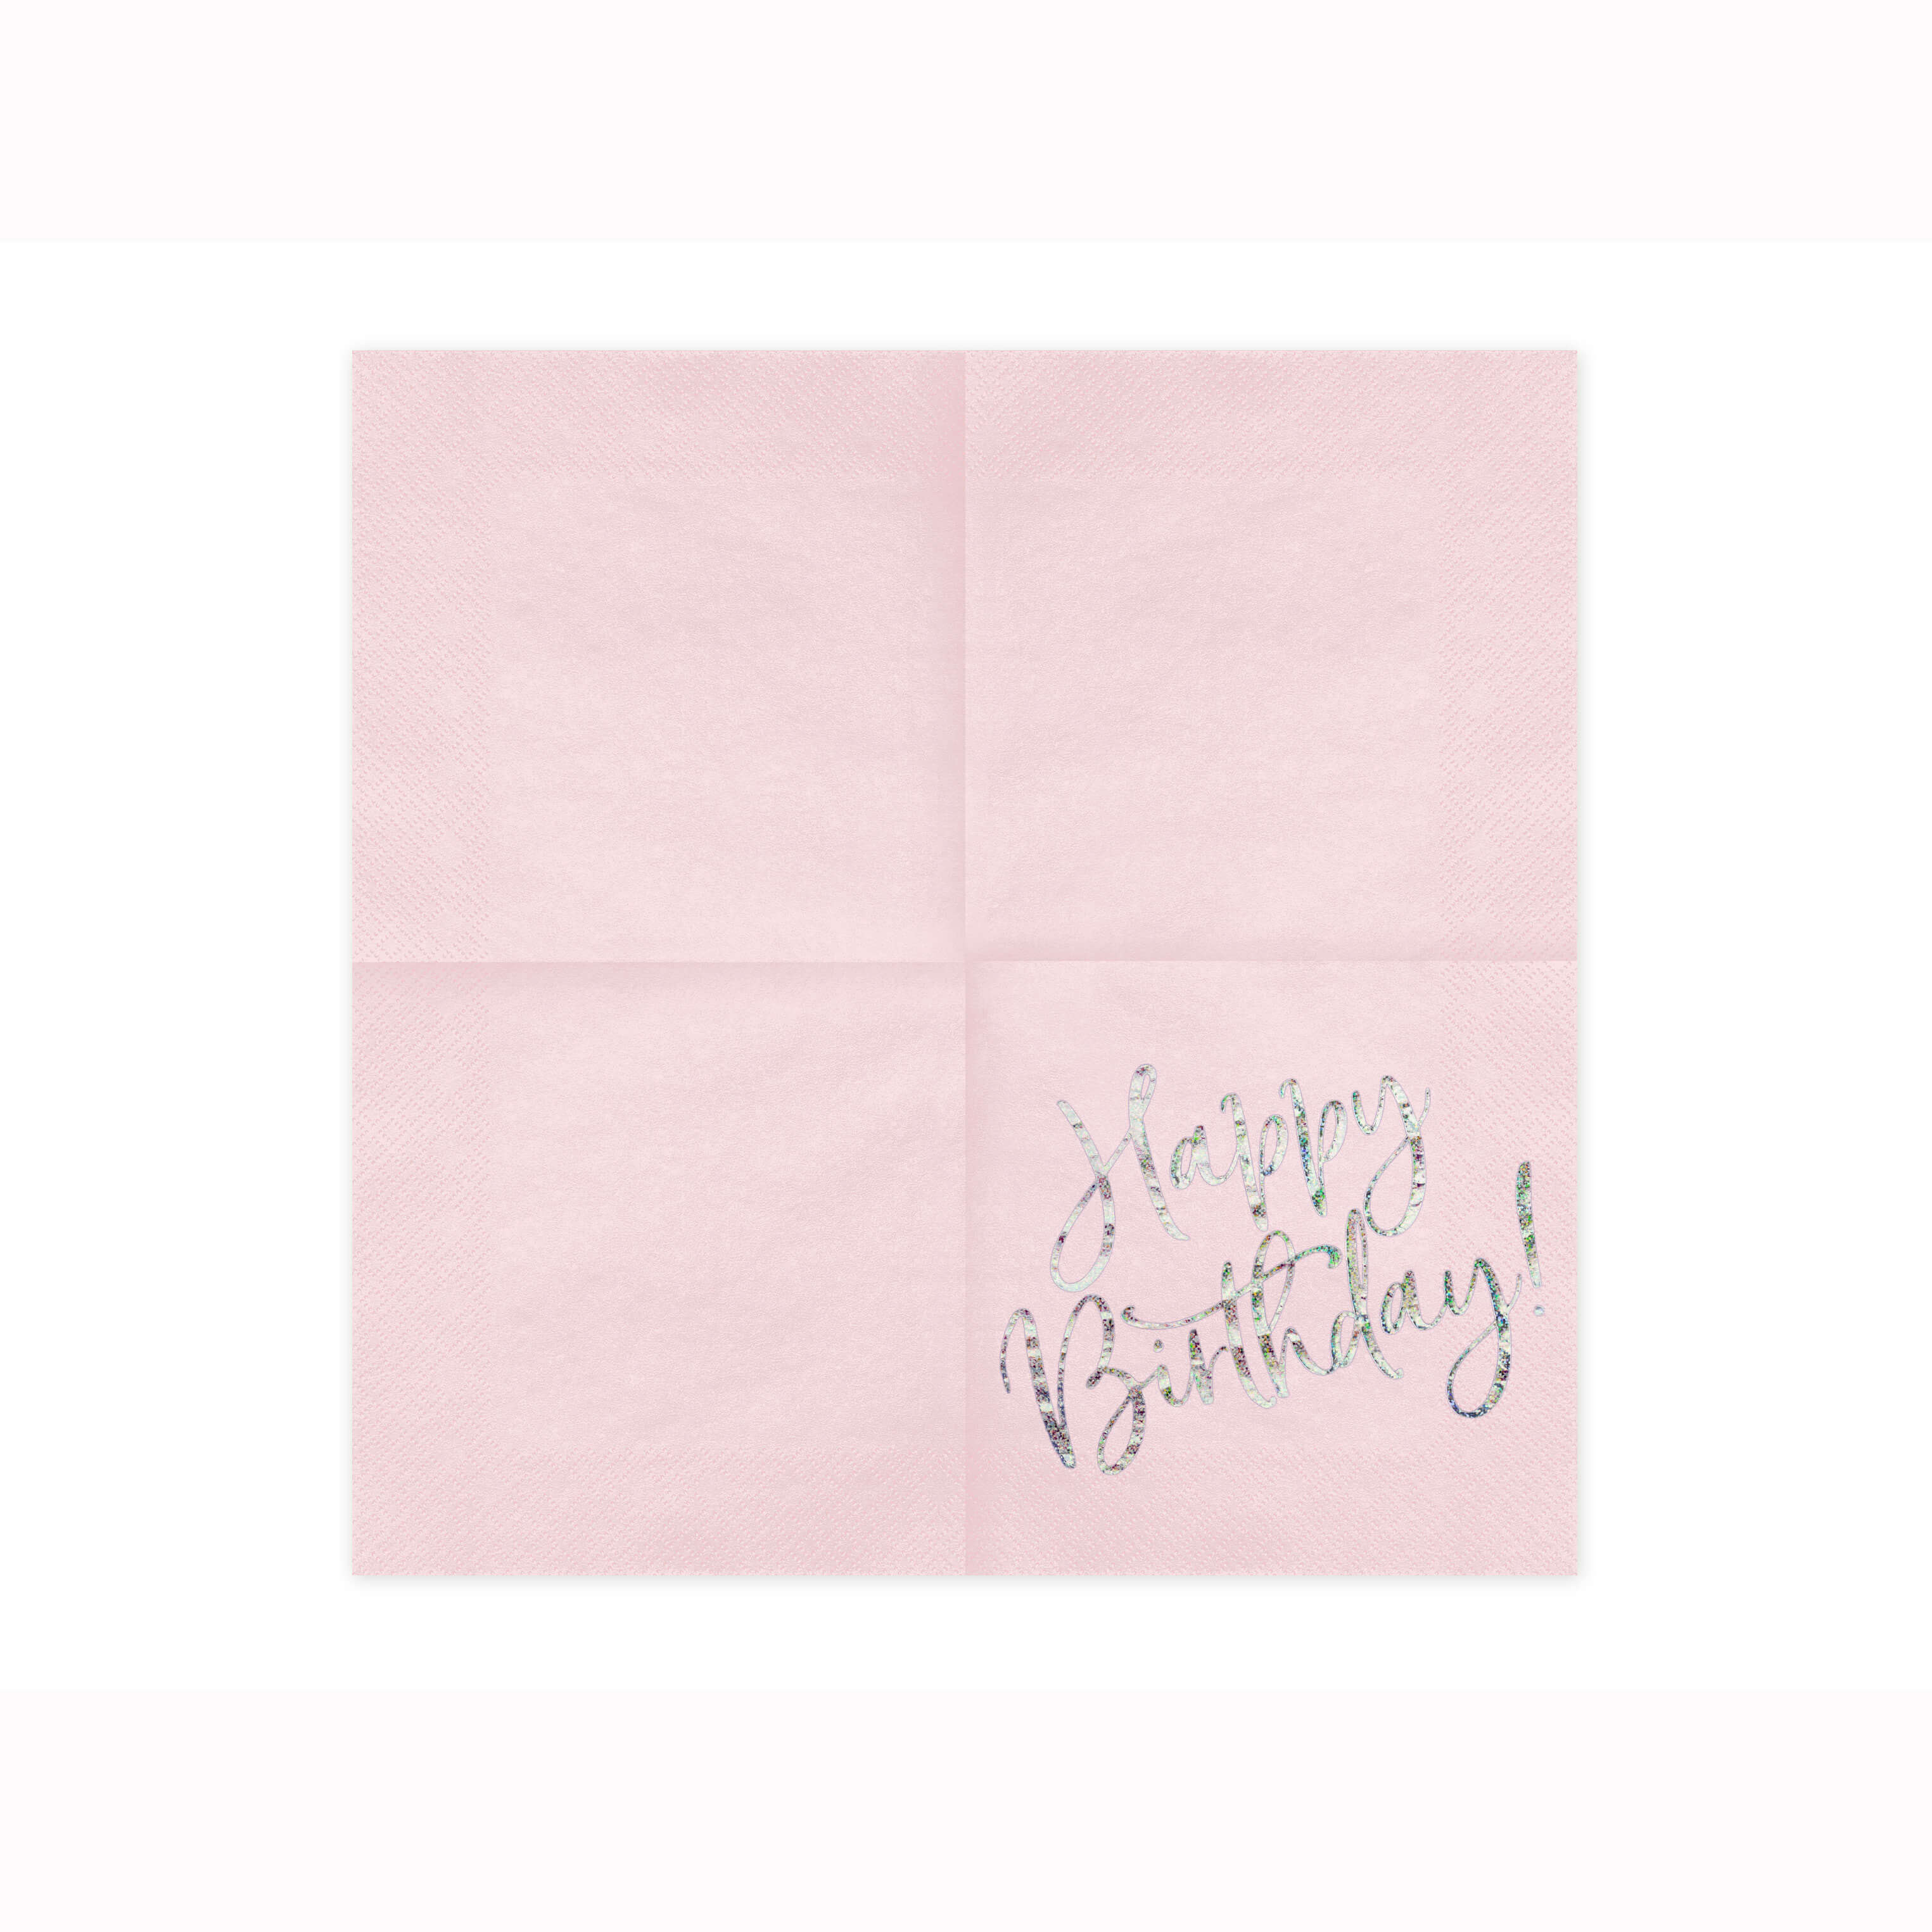 Servietten Happy Birthday rosa/silber, 20 Stück